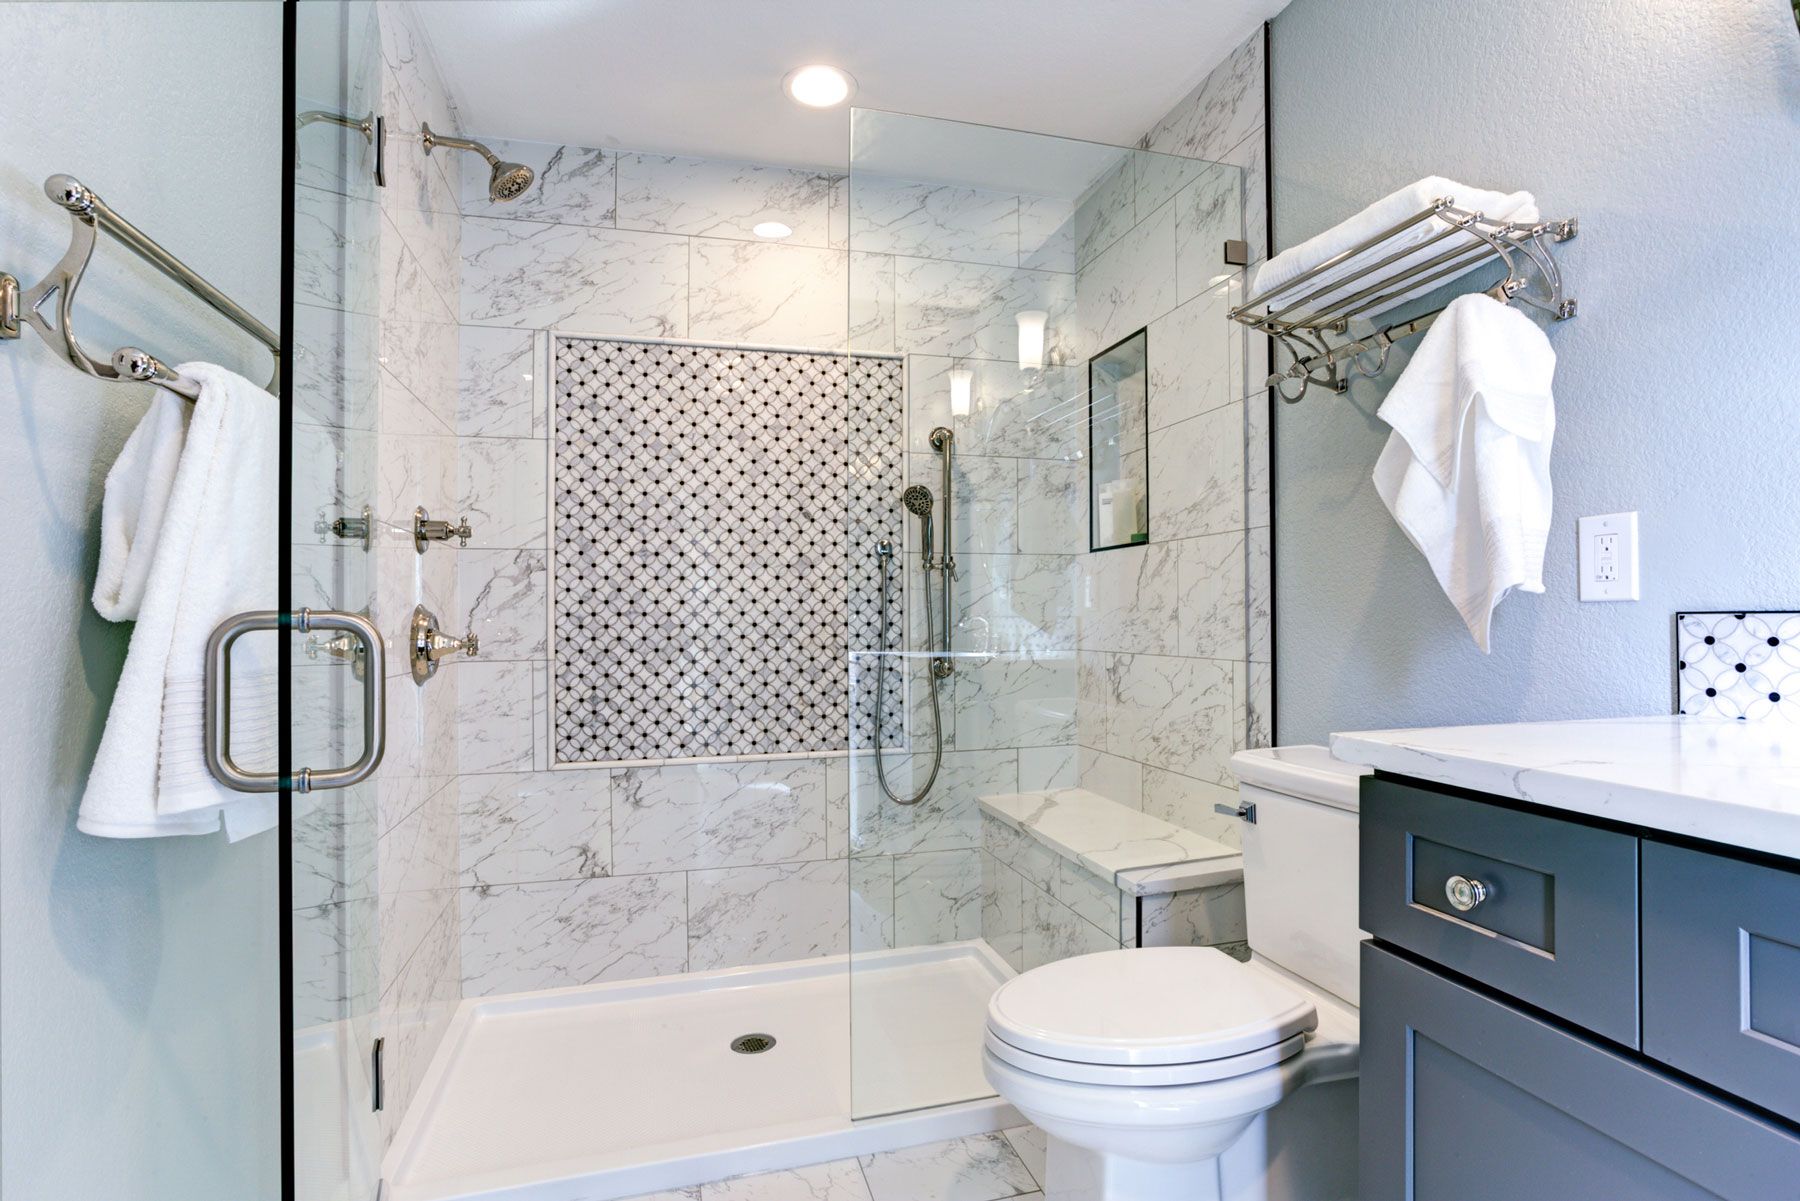 Ces astuces de conception de salle de bain rendront votre salle de bain plus propre